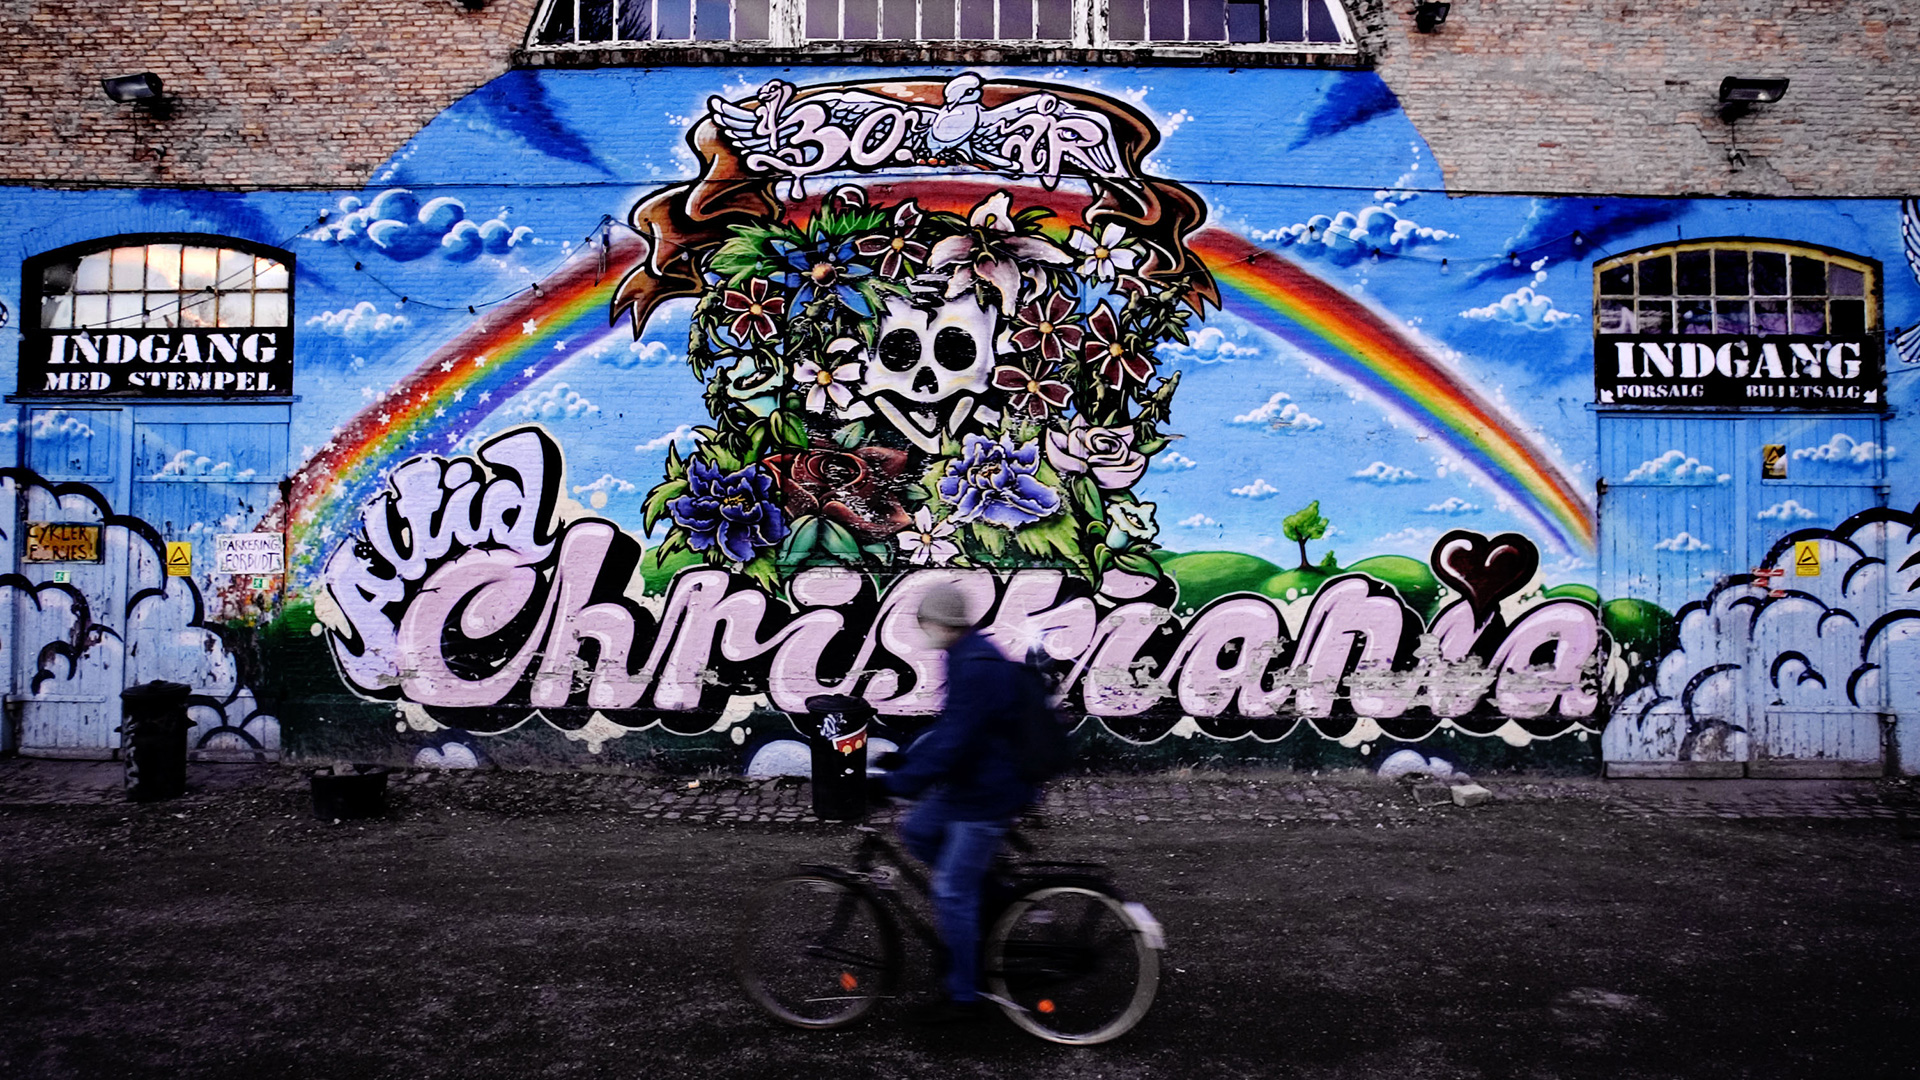 Las drogas amenazan Christiania, la utopía ‘hippie’ que aún sobrevive